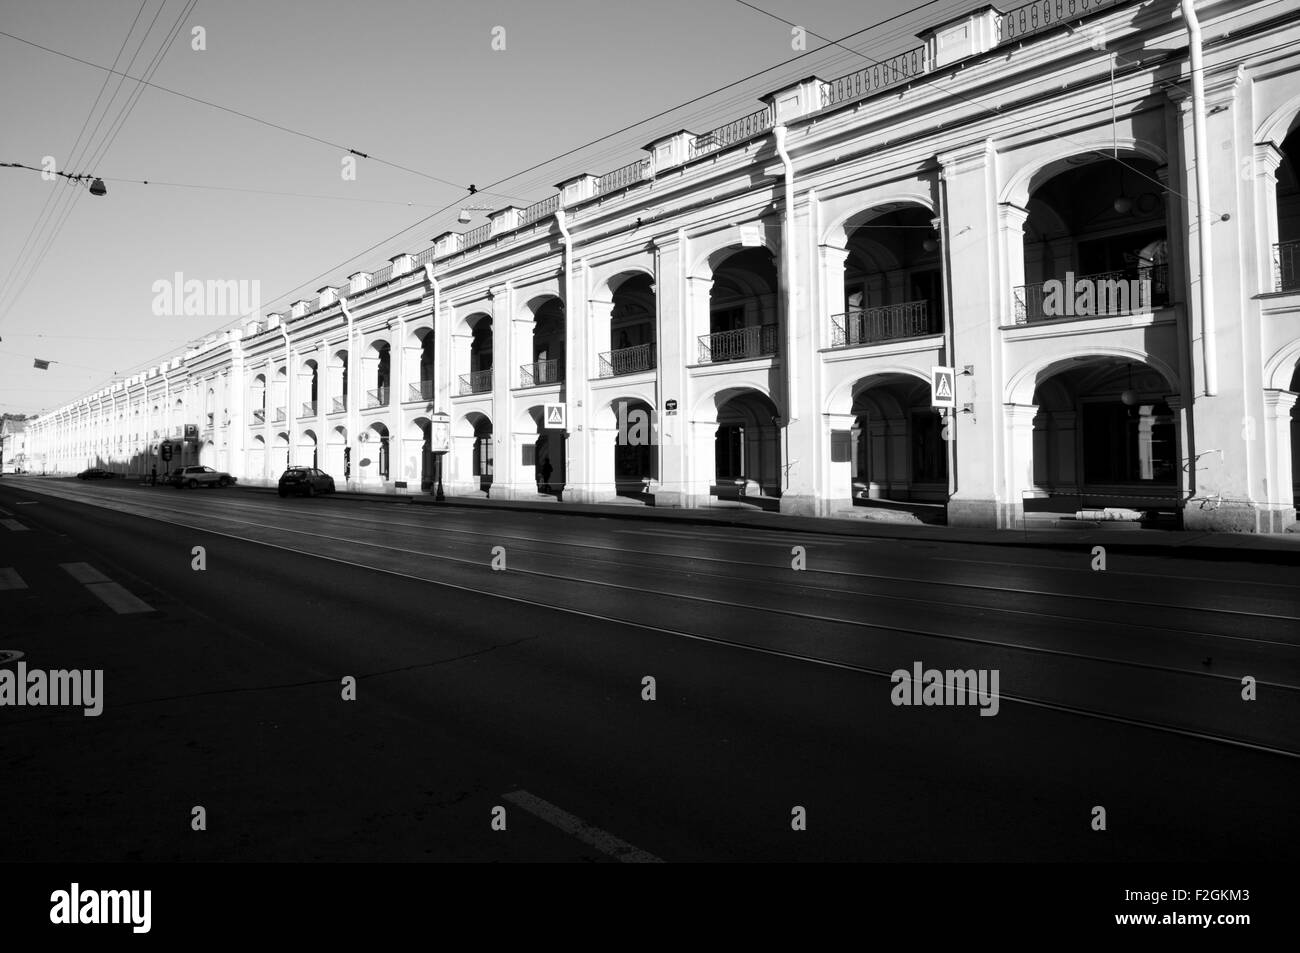 Hauptstraße in St. Petersburg - Russland Stockfoto